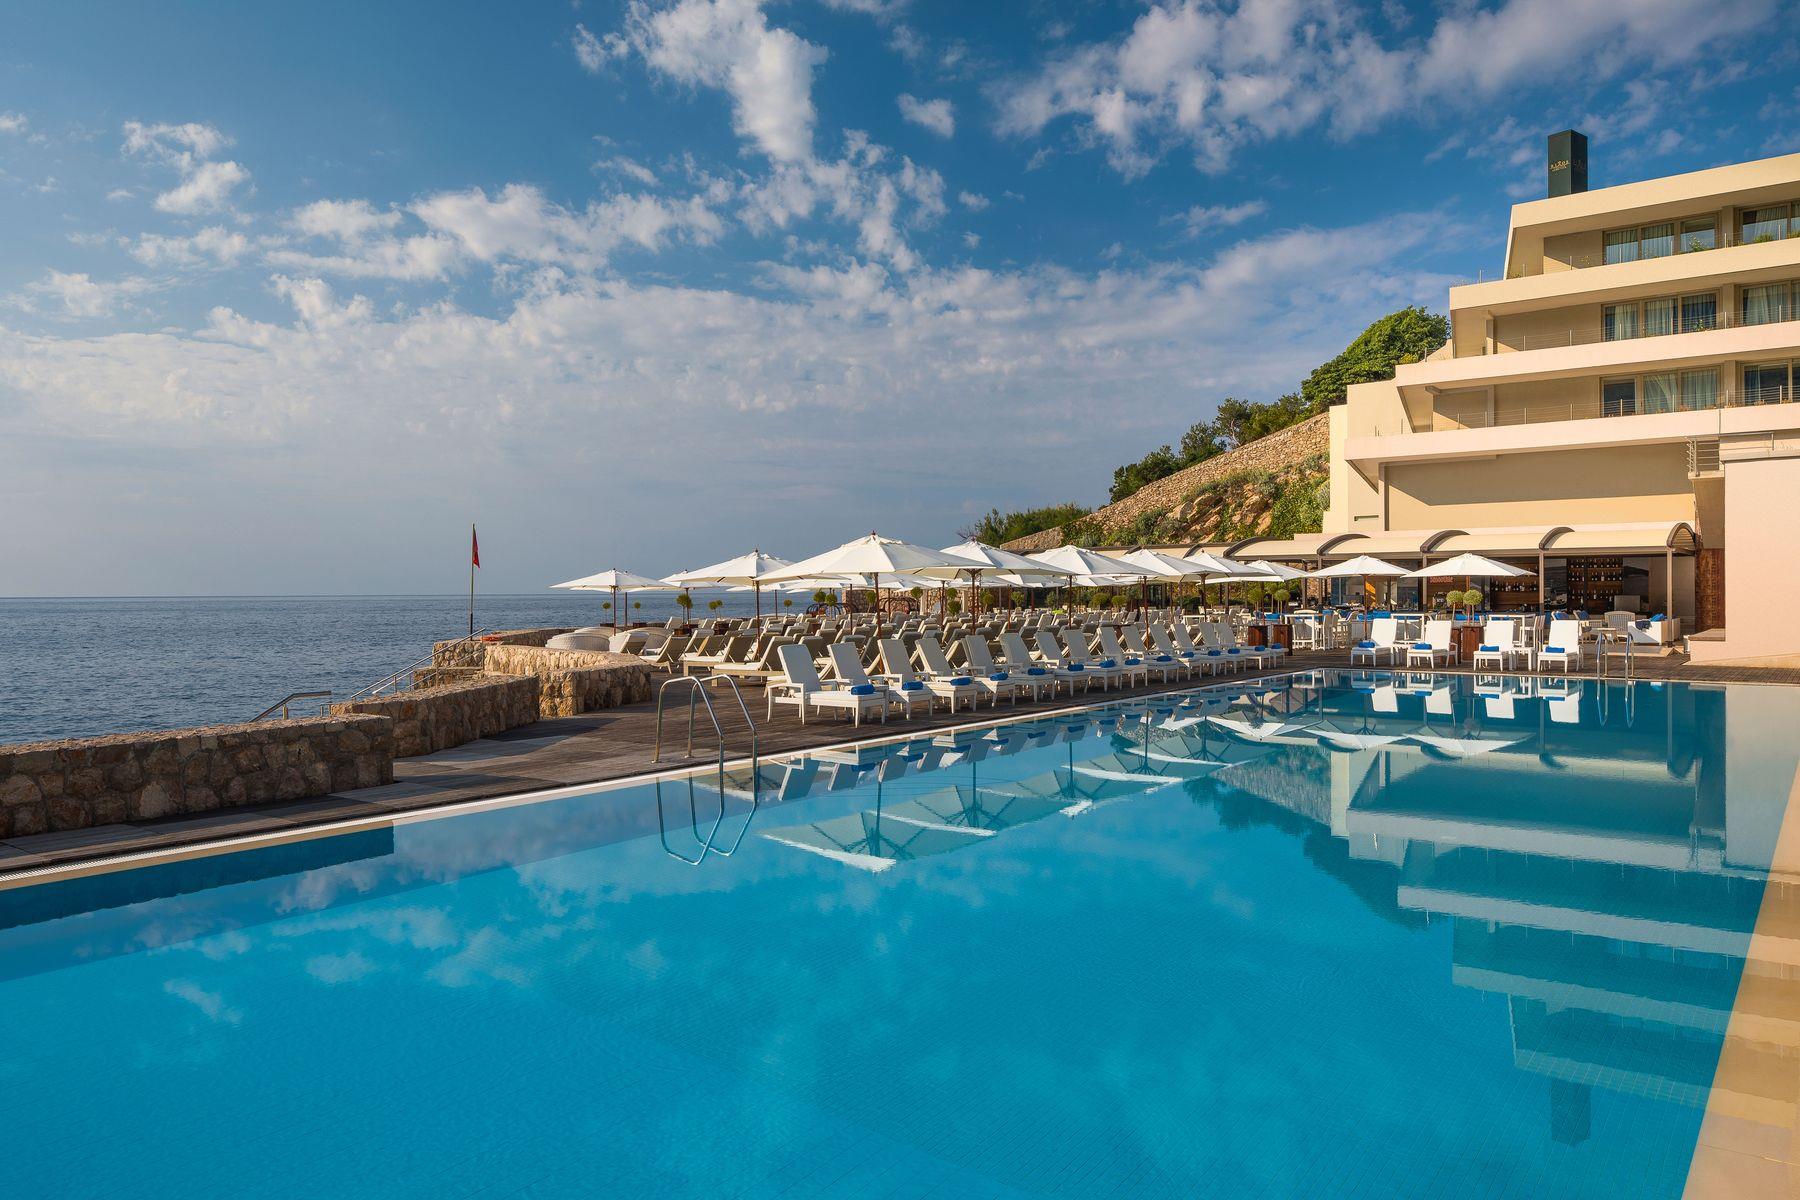 Ексклюзивний розкішний відпочинок у Хорватії: Rixos Premium Dubrovnik 5*